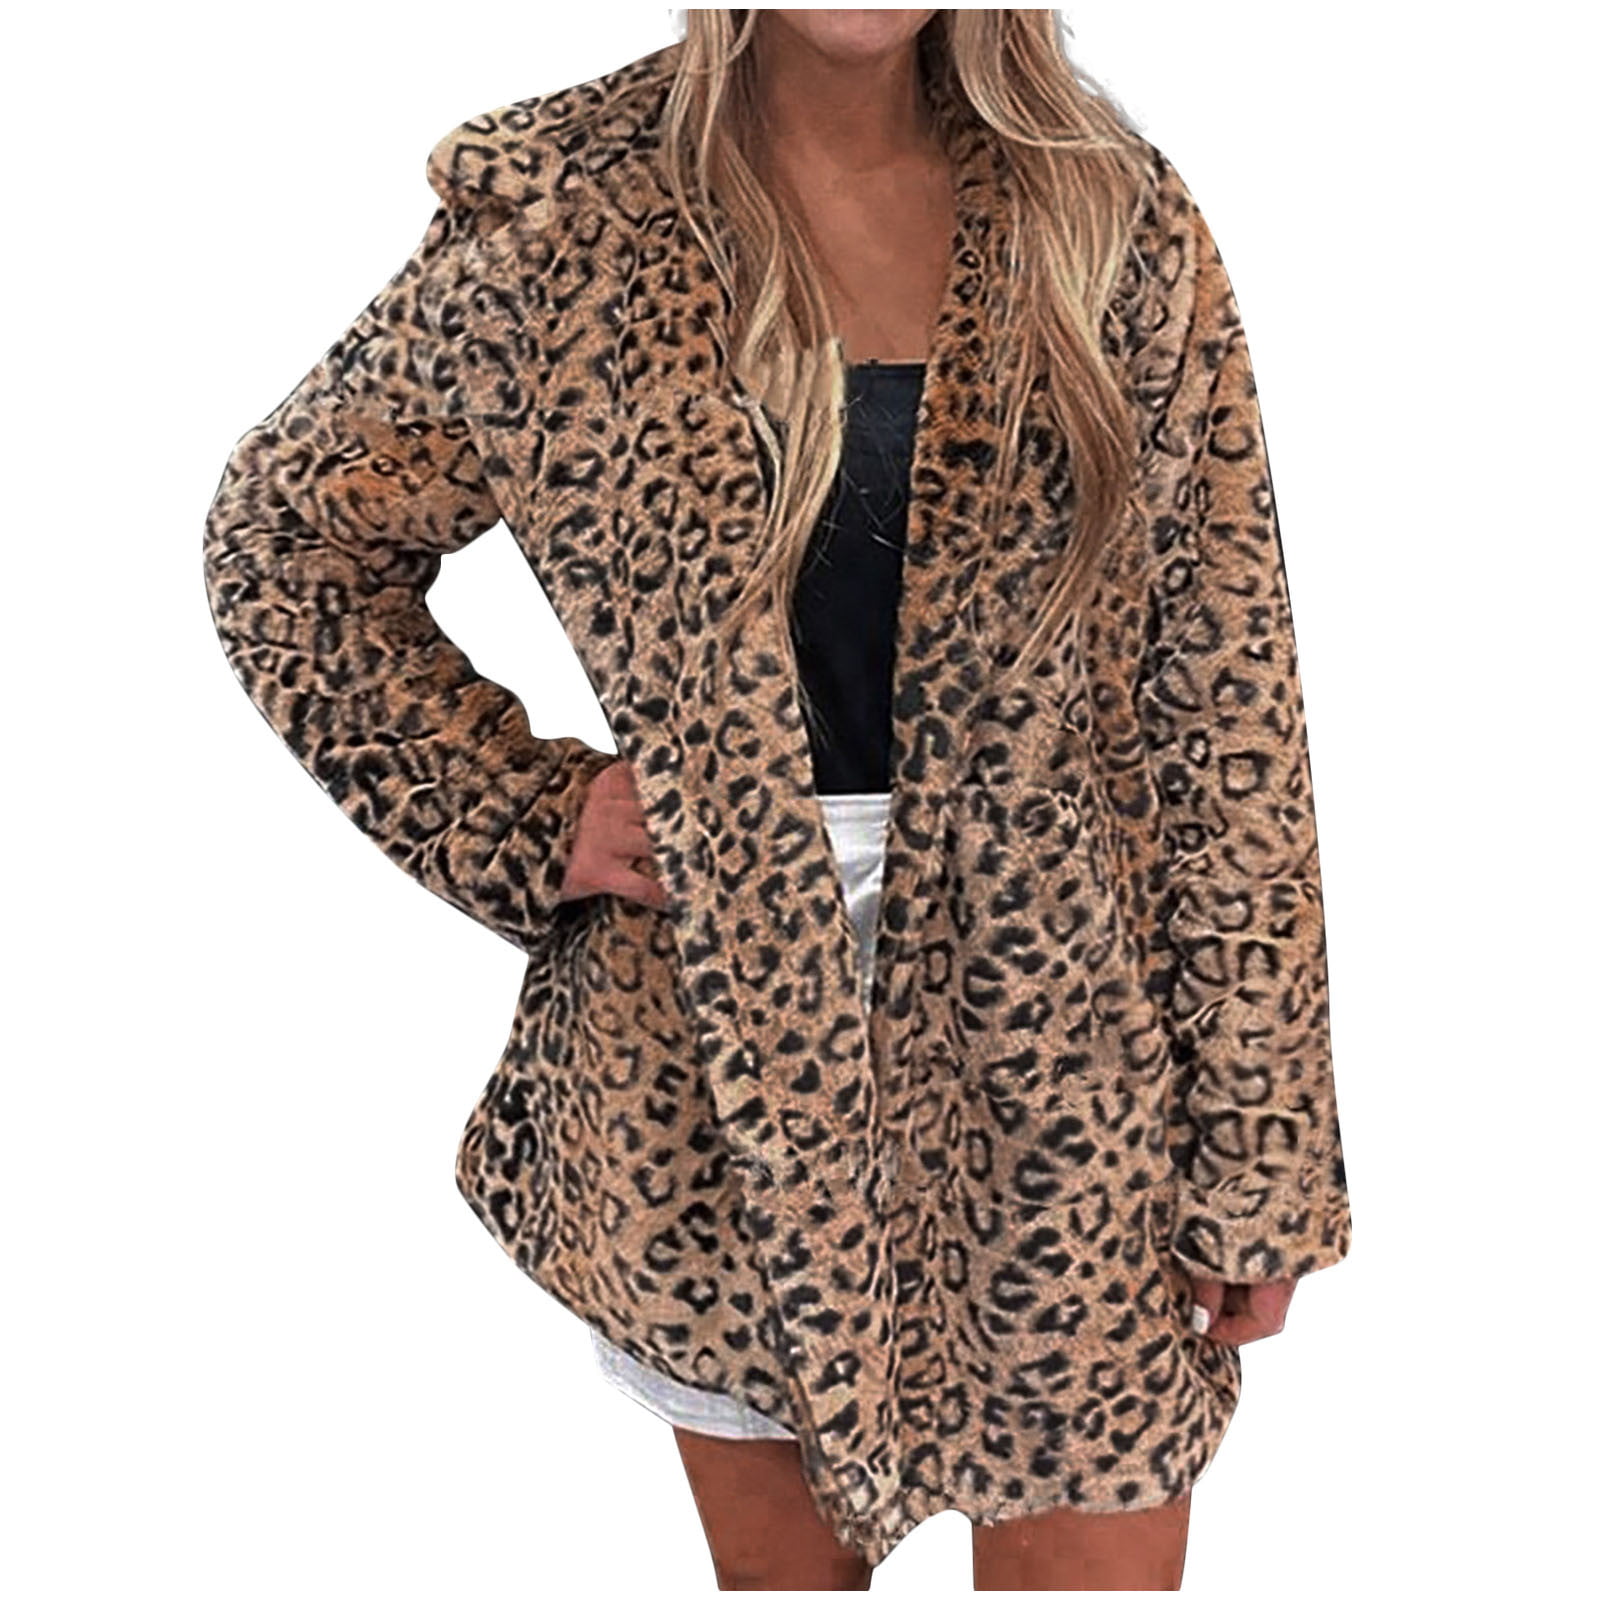 leopard print pea coat